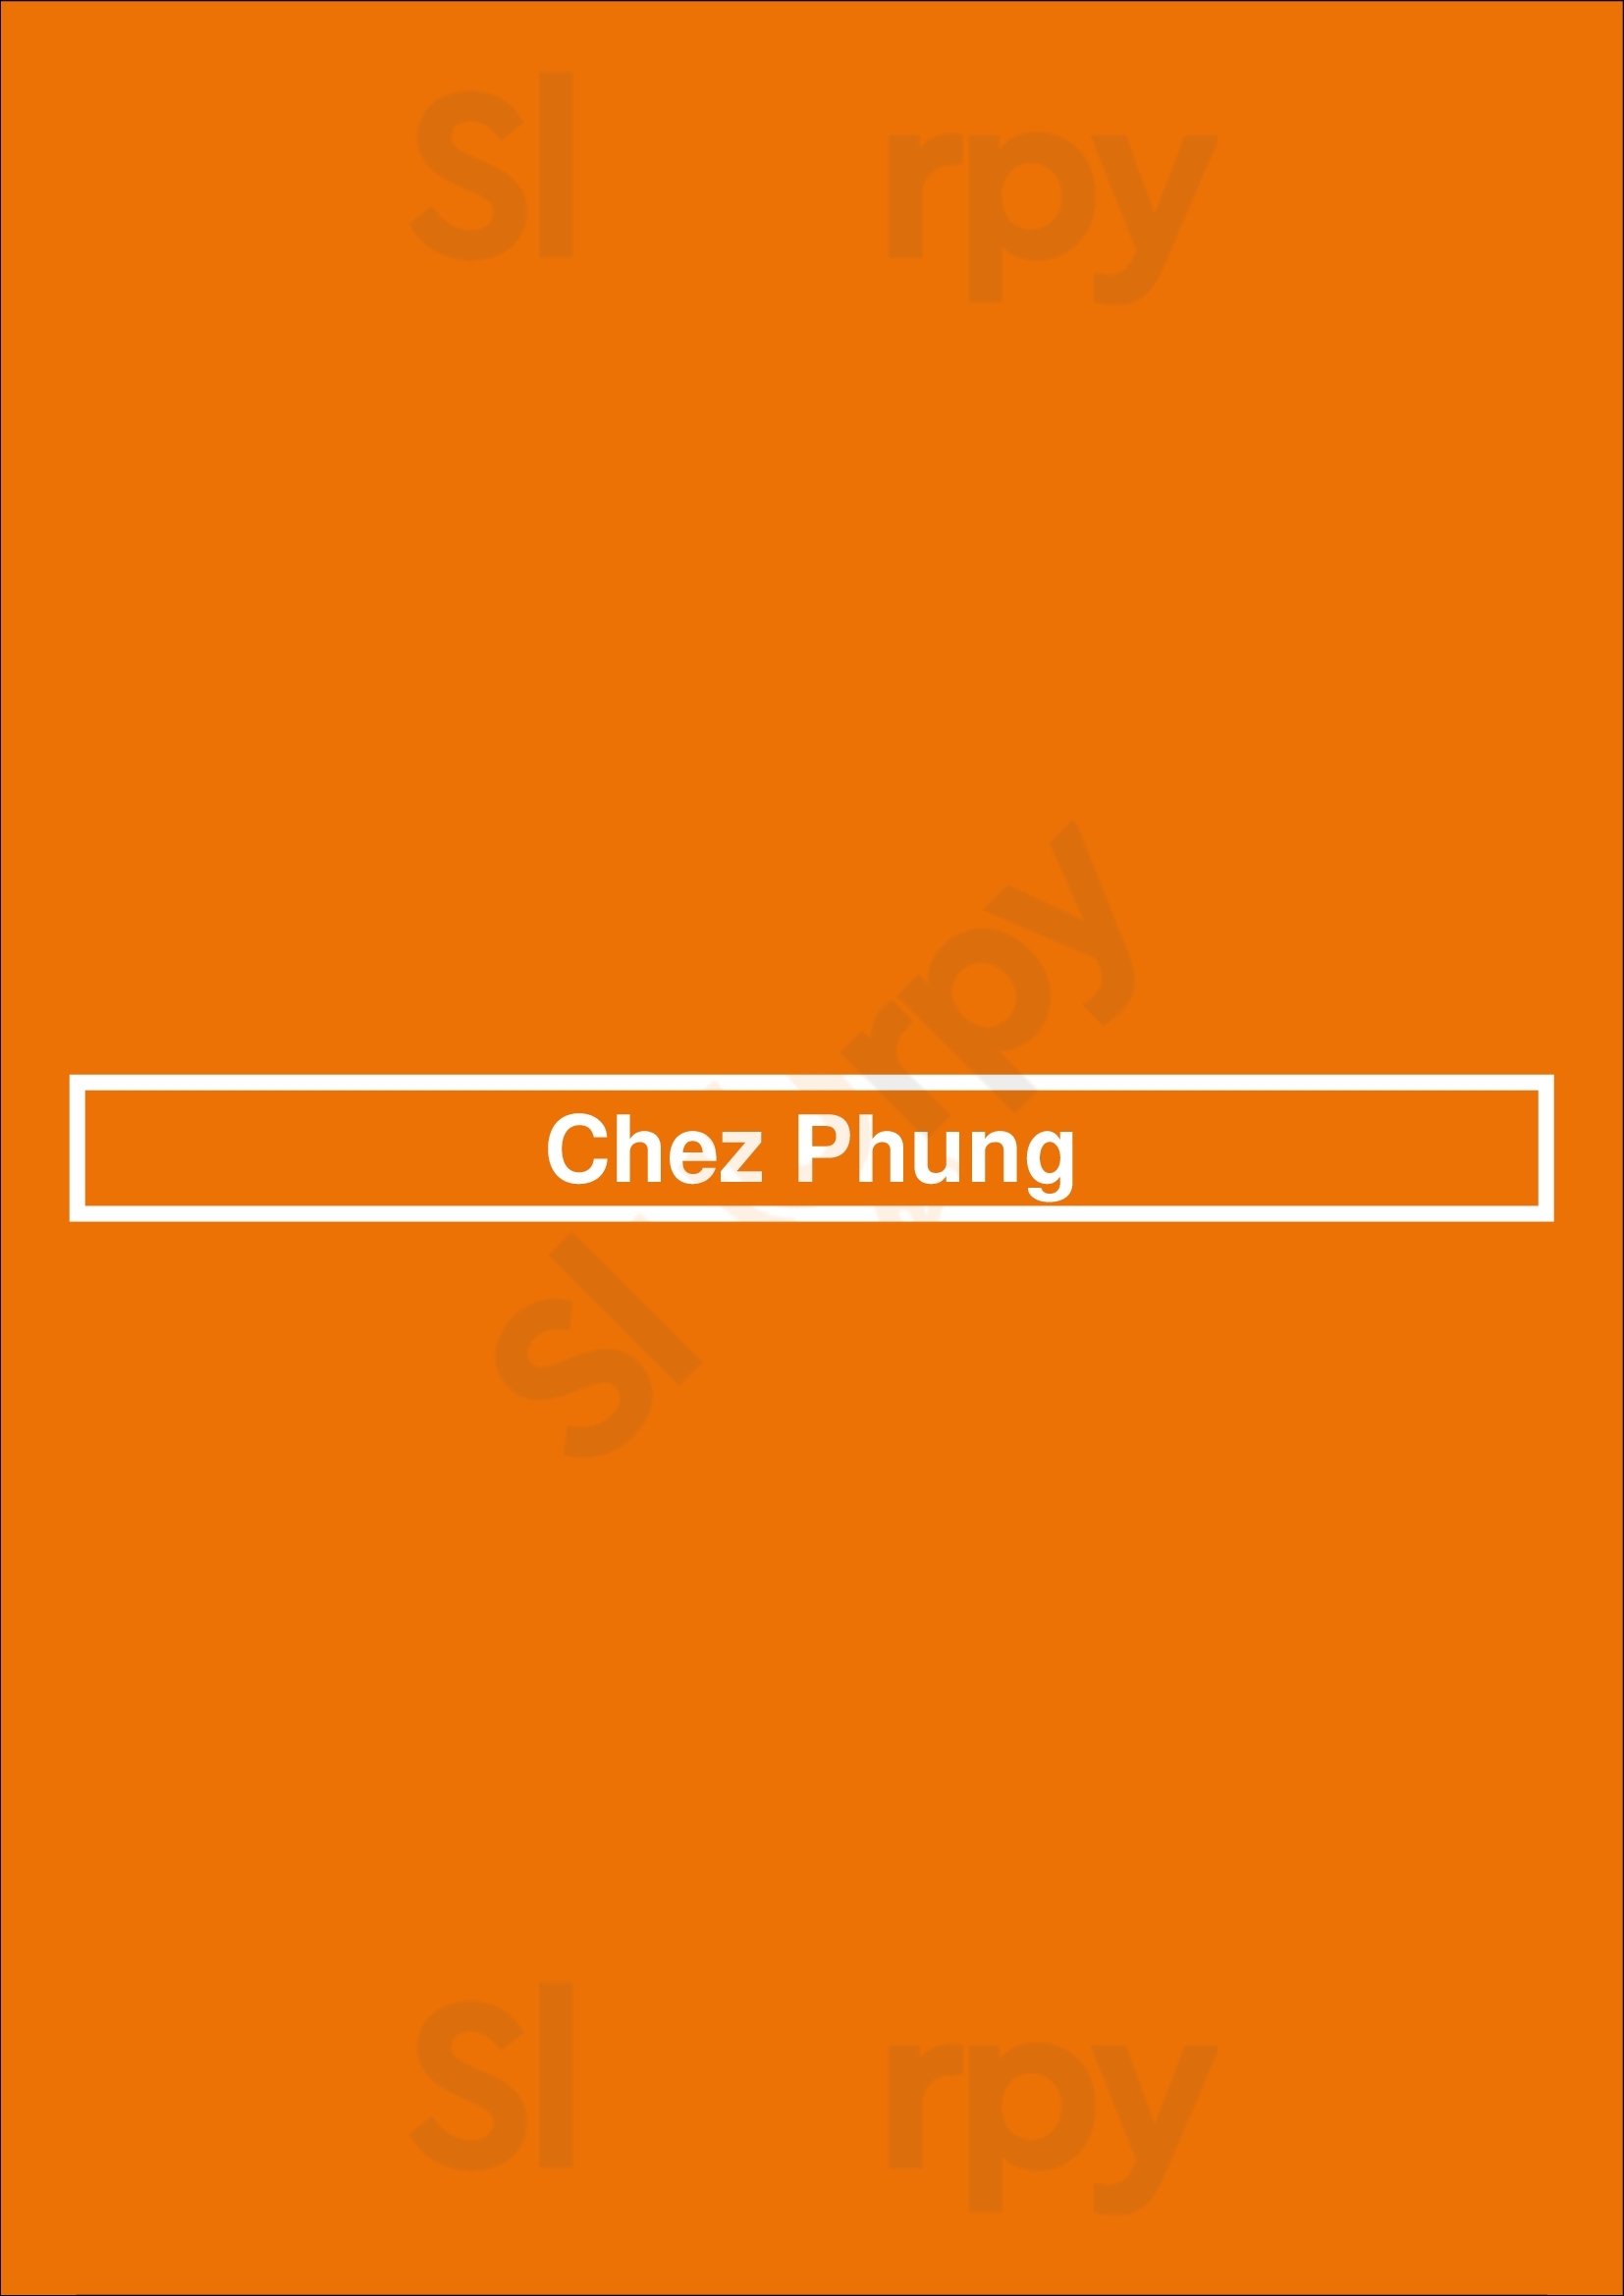 Chez Phung Paris Menu - 1